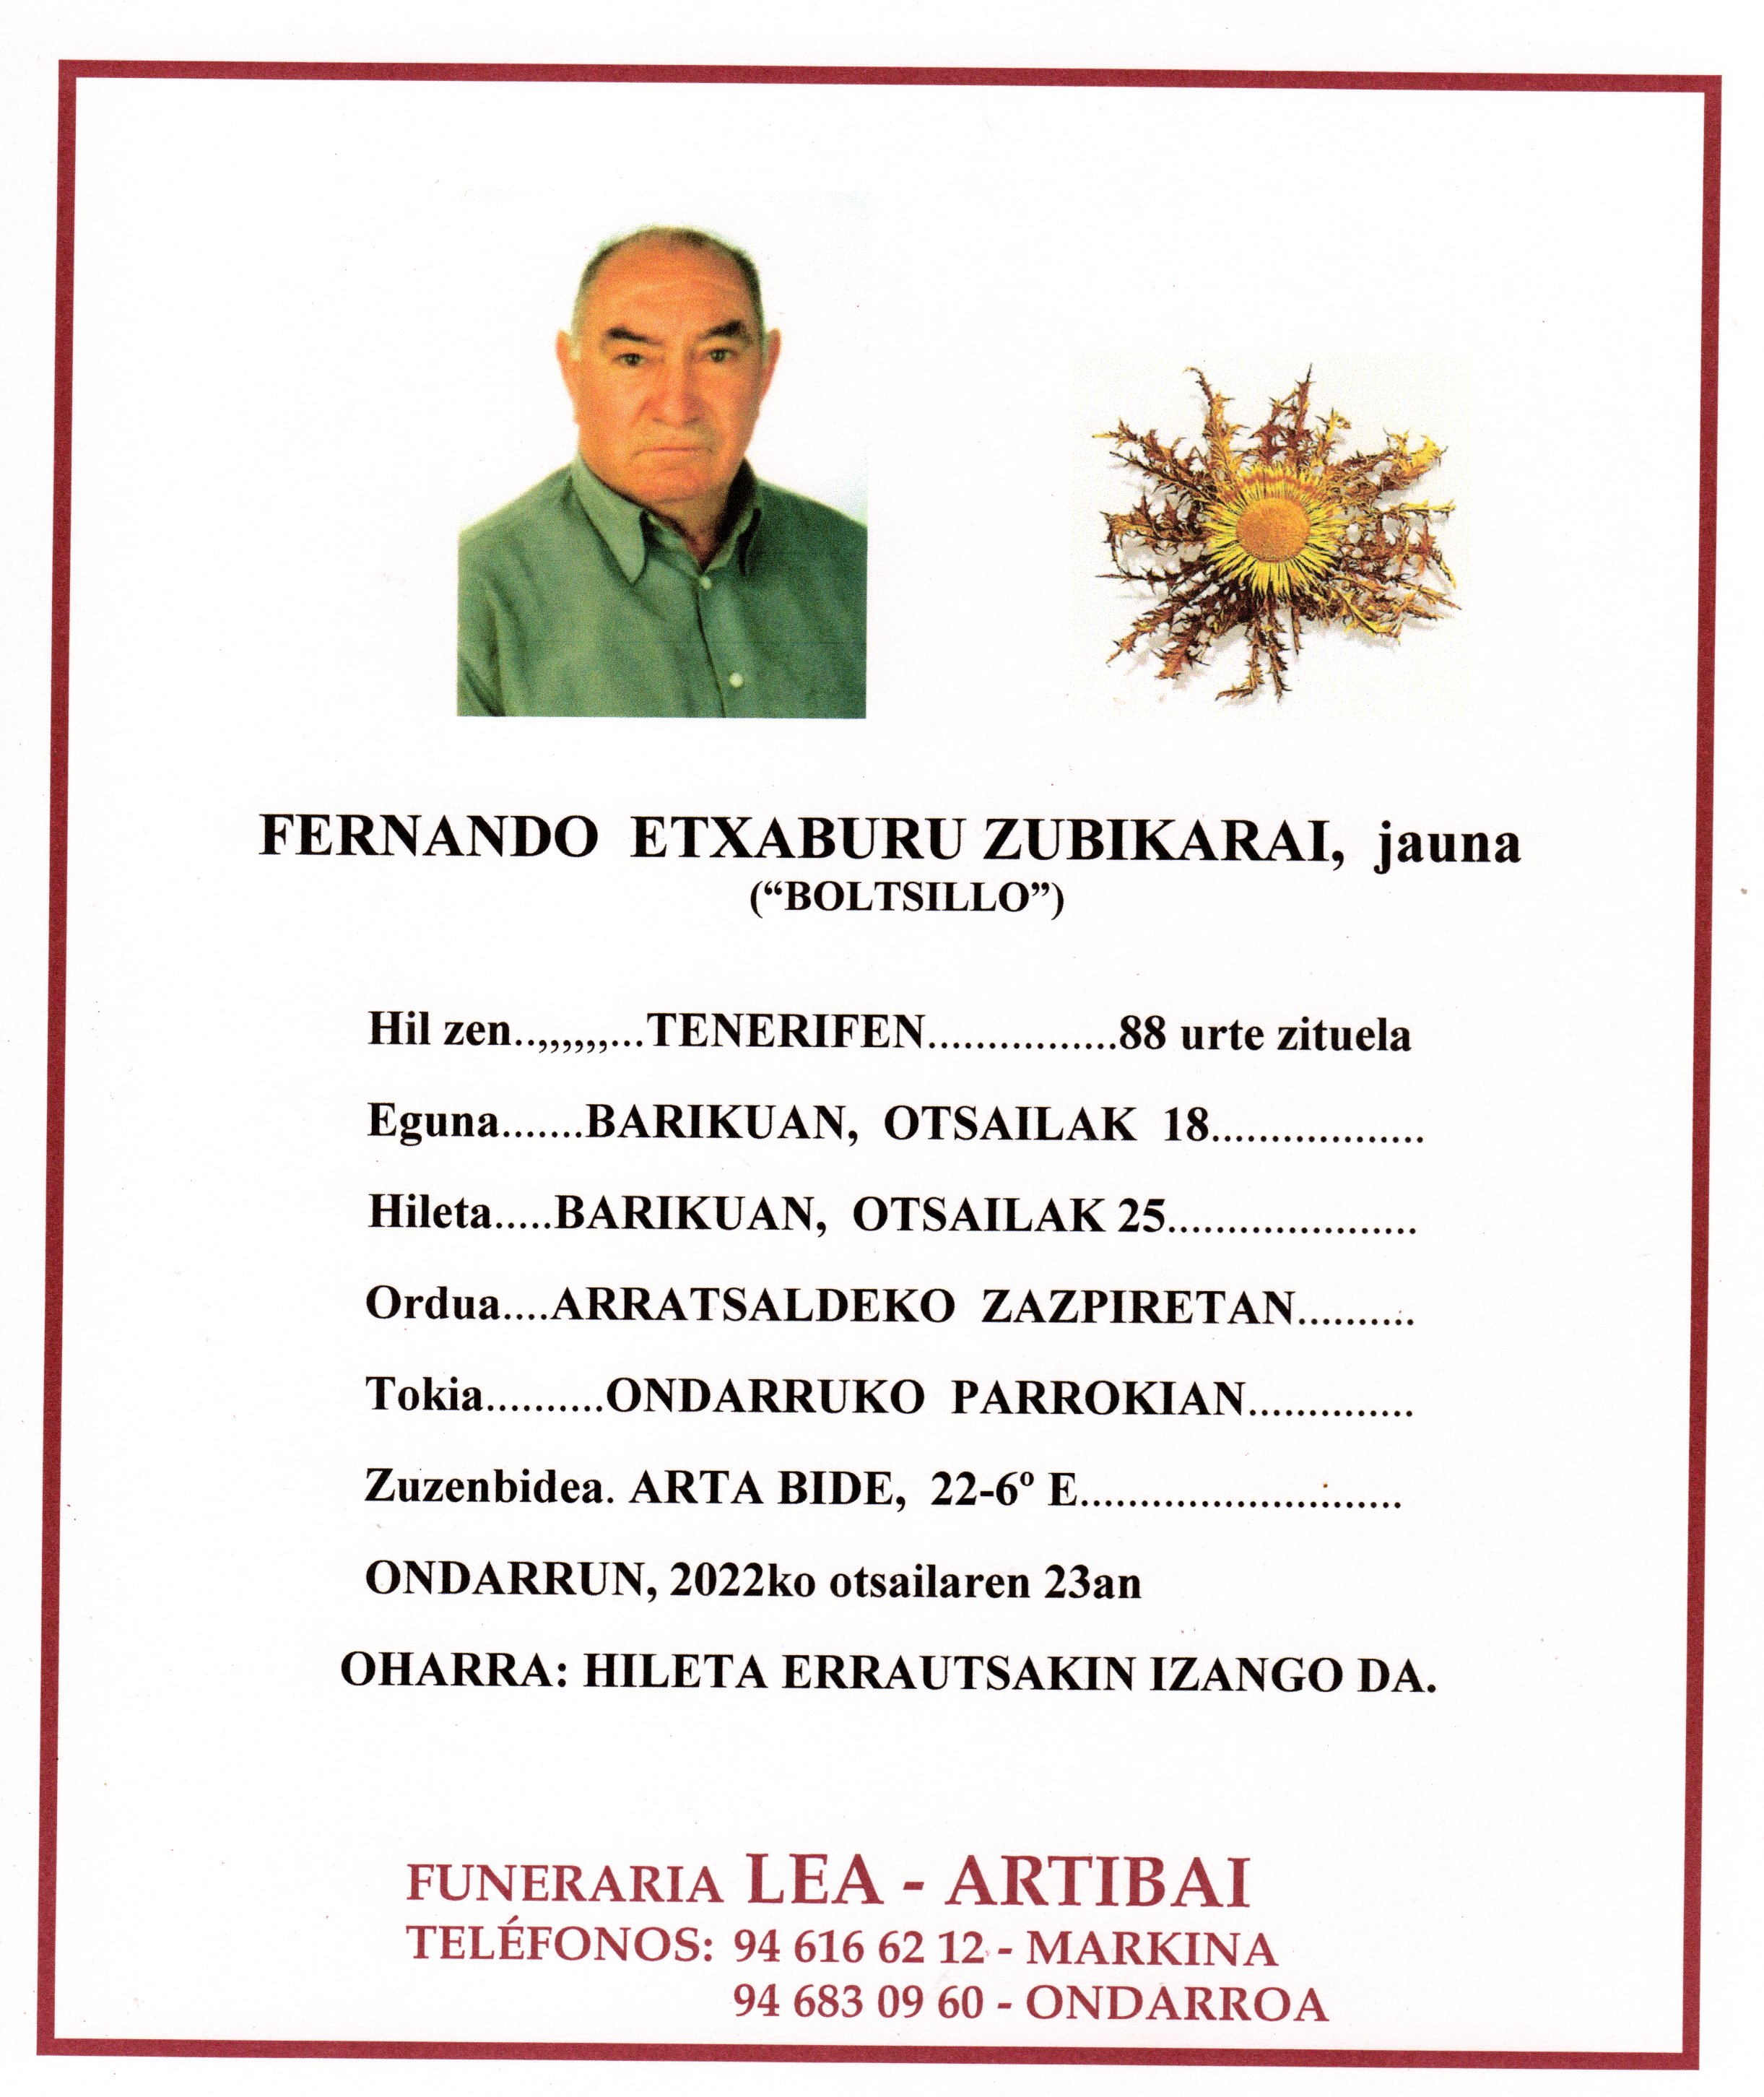 Fernando Etxaburu Zubikarai